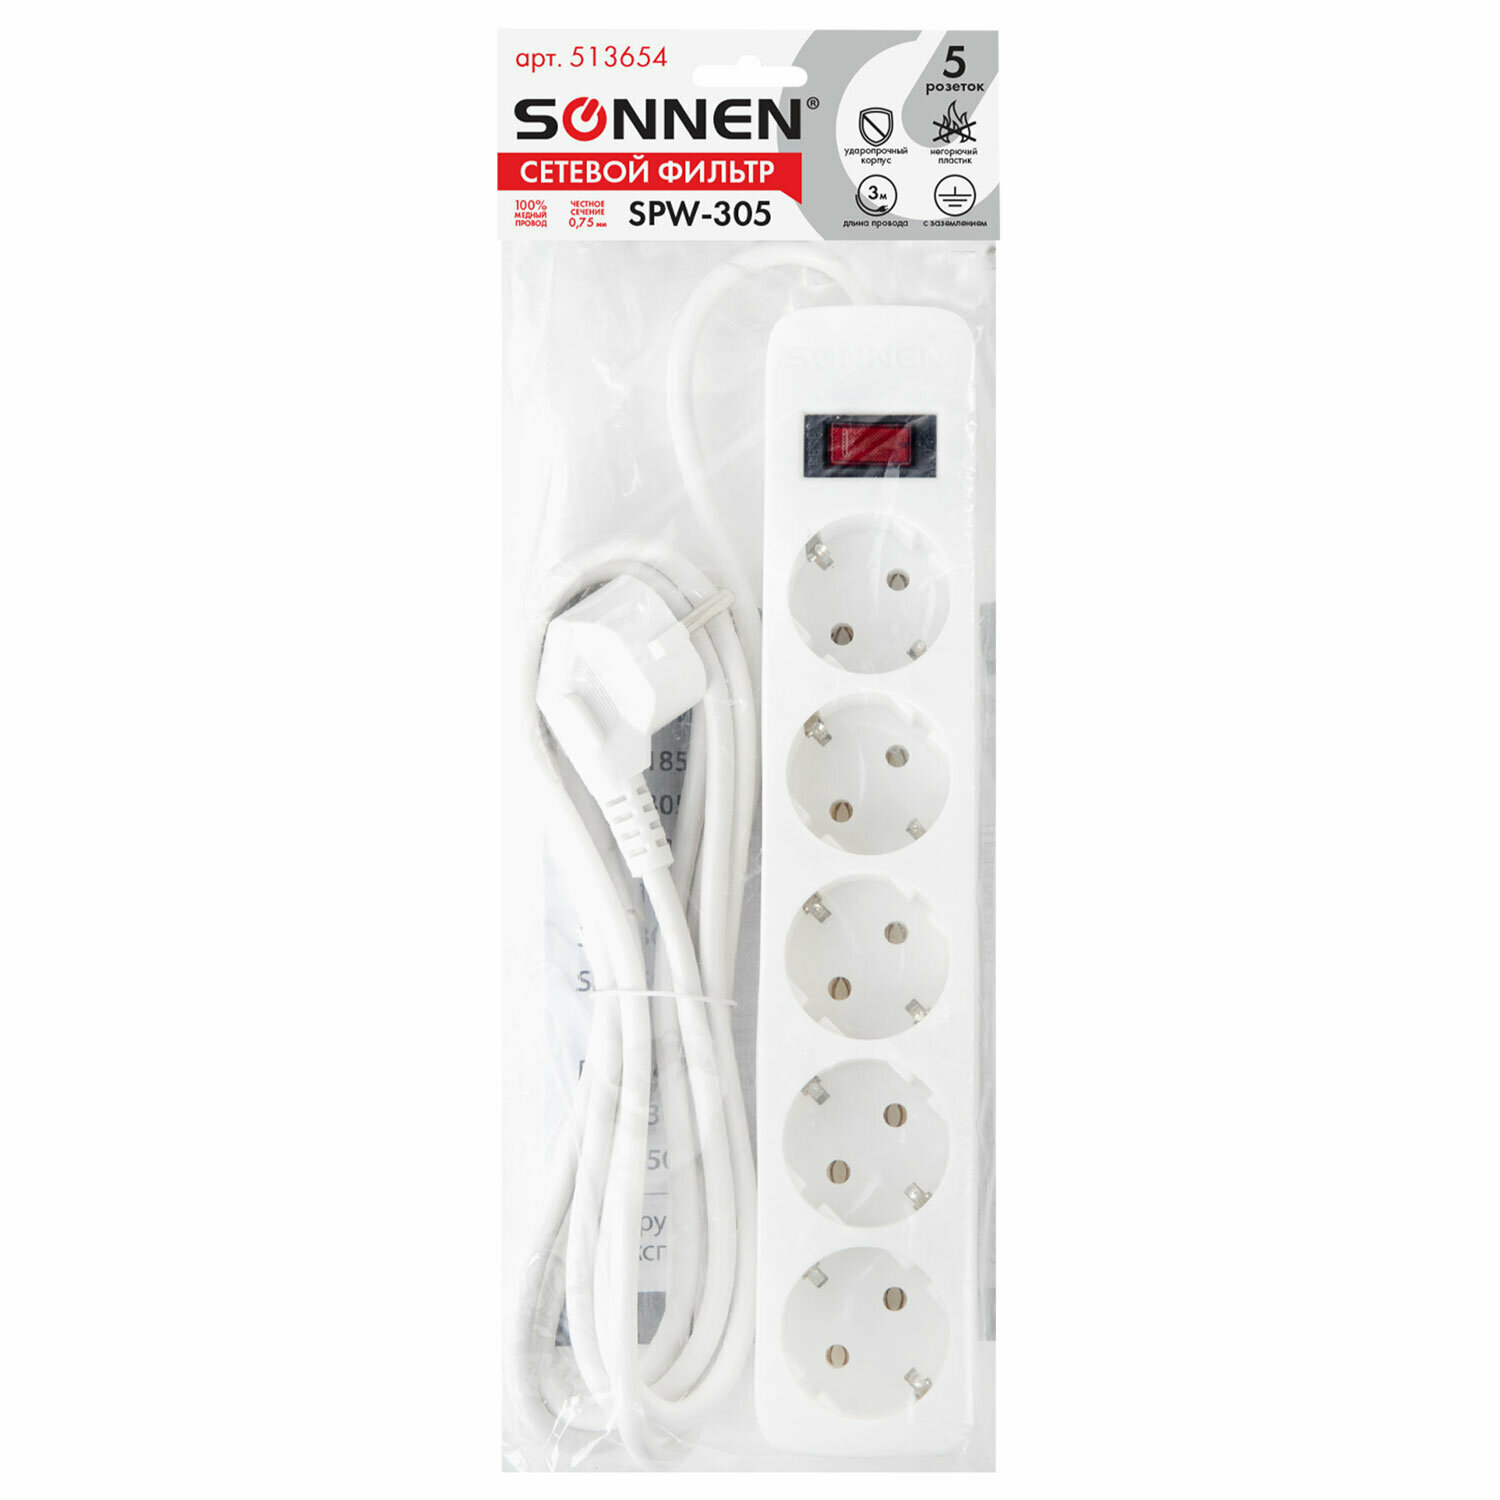 Сетевой фильтр SONNEN SPW-305, 5 розеток с заземлением, выключатель, 10 А, 3 м, белый, 513654 - фотография № 8